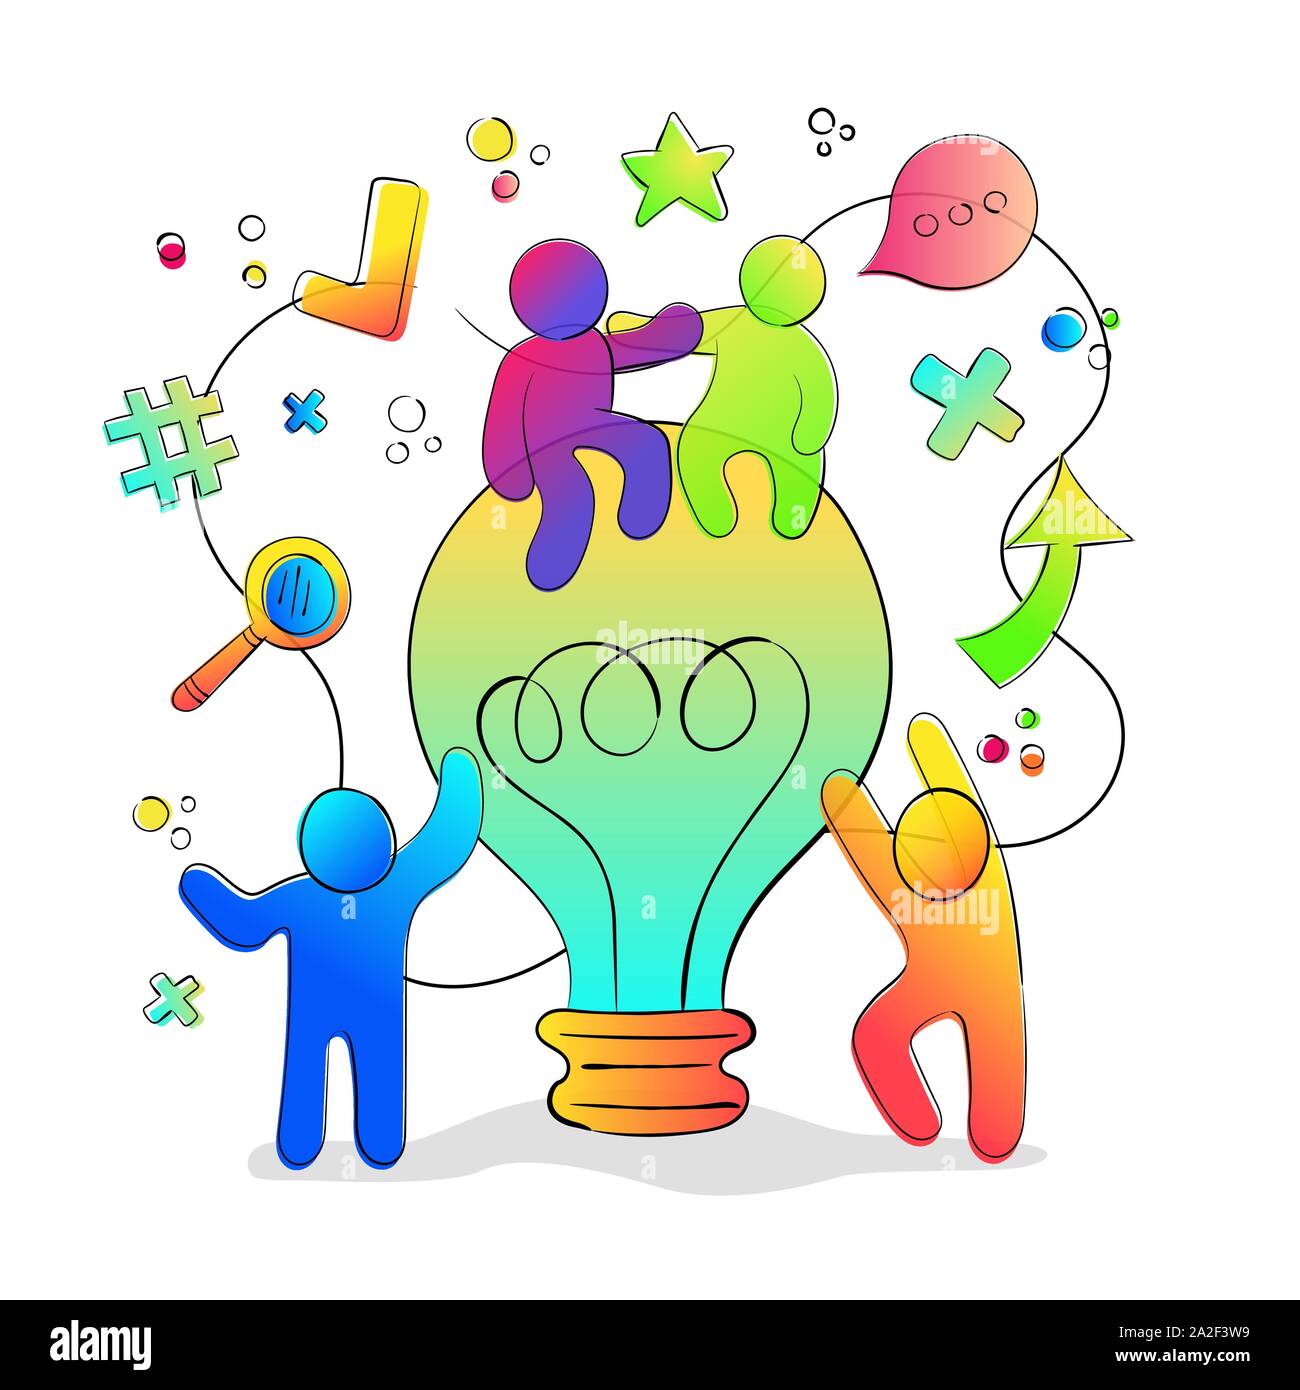 Spaß kreative Idee Konzept mit bunten Menschen zusammen auf große Glühbirne. Brainstorming oder Kreativität Projekt Abbildung. Stock Vektor